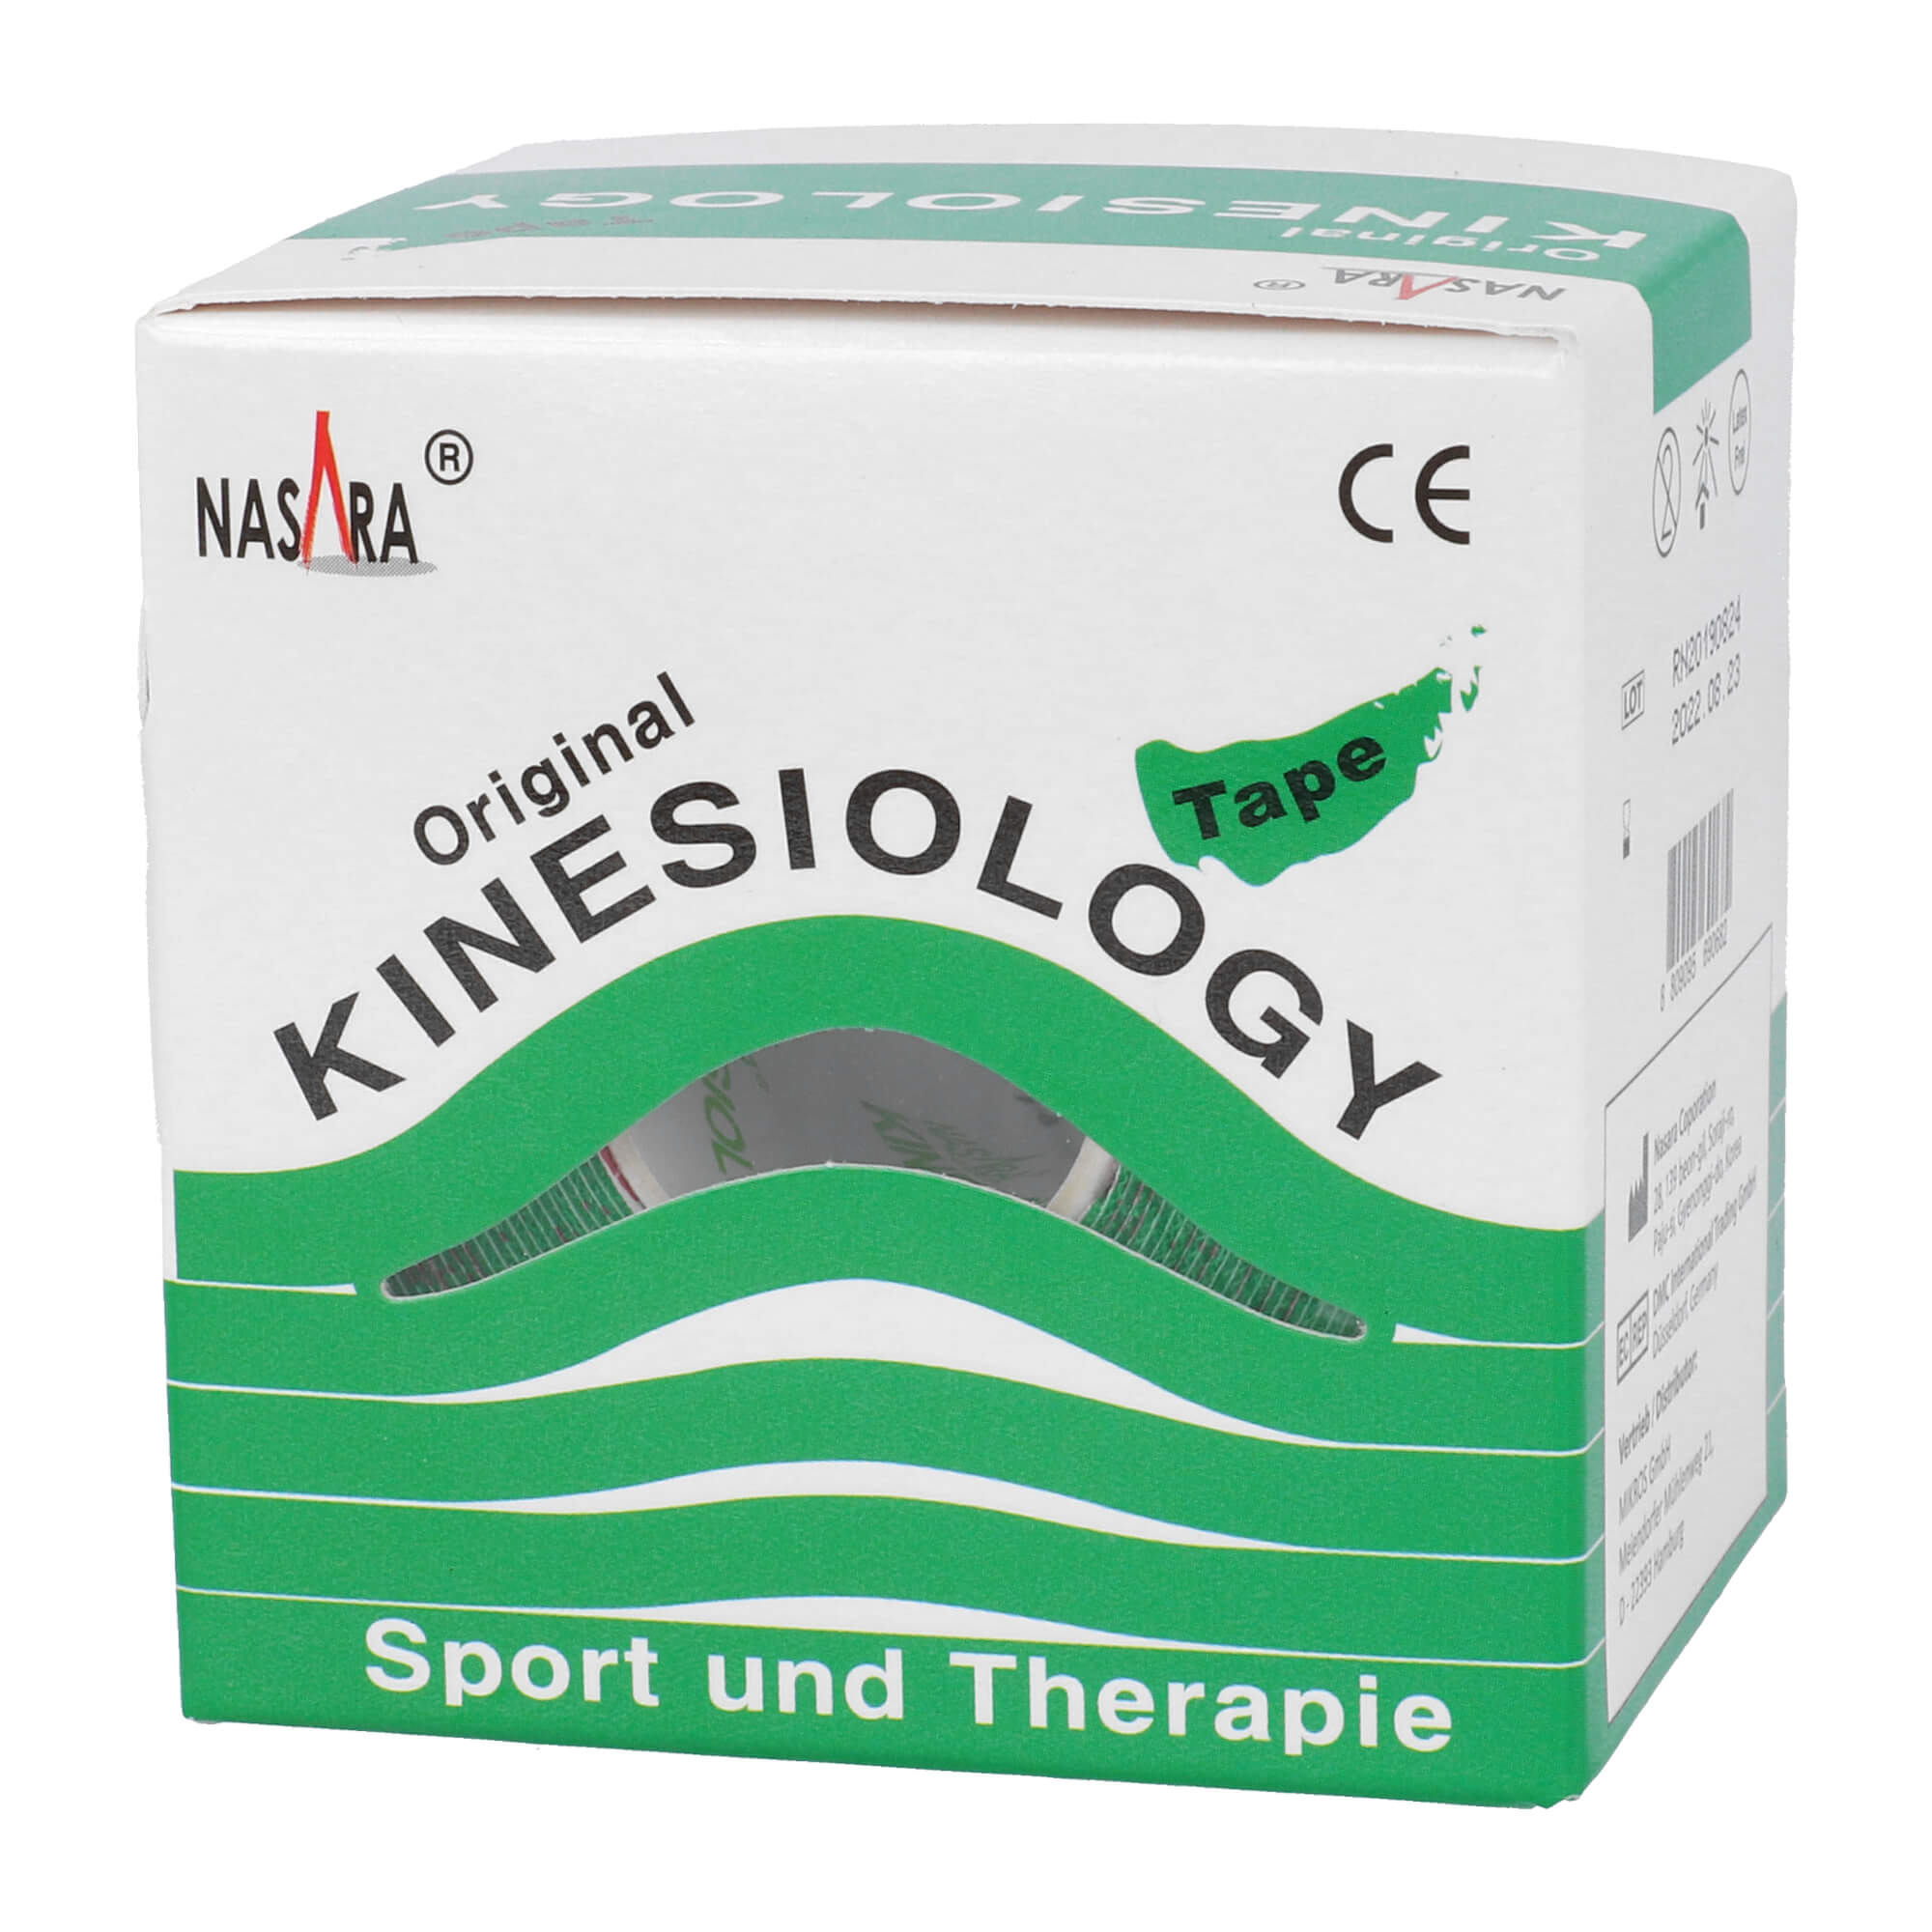 Kinesiology Tape für Sport und Therapie. Farbe: grün.